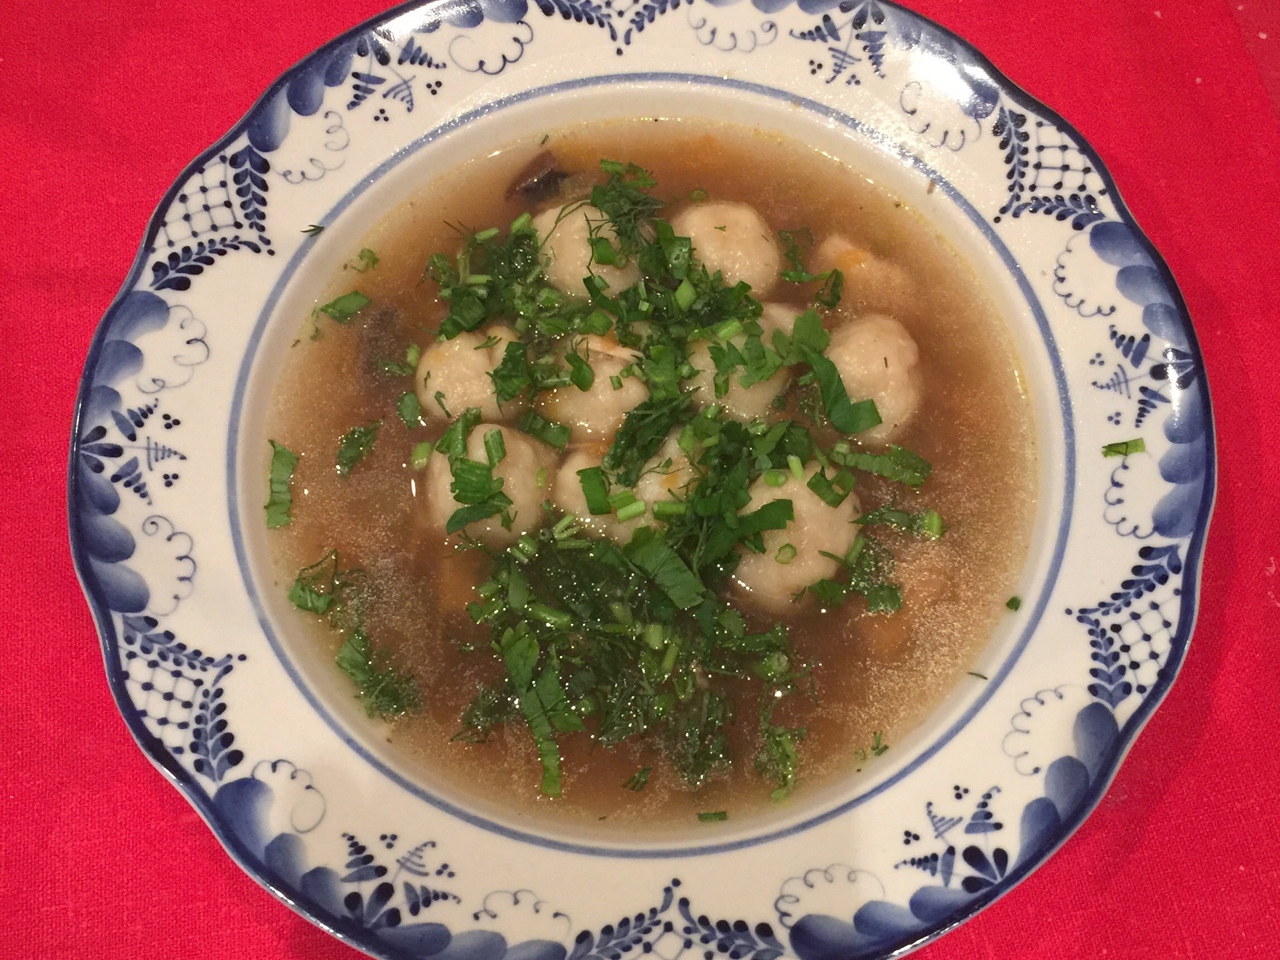 Суп с галушками: рецепт с фото и пошаговым описанием